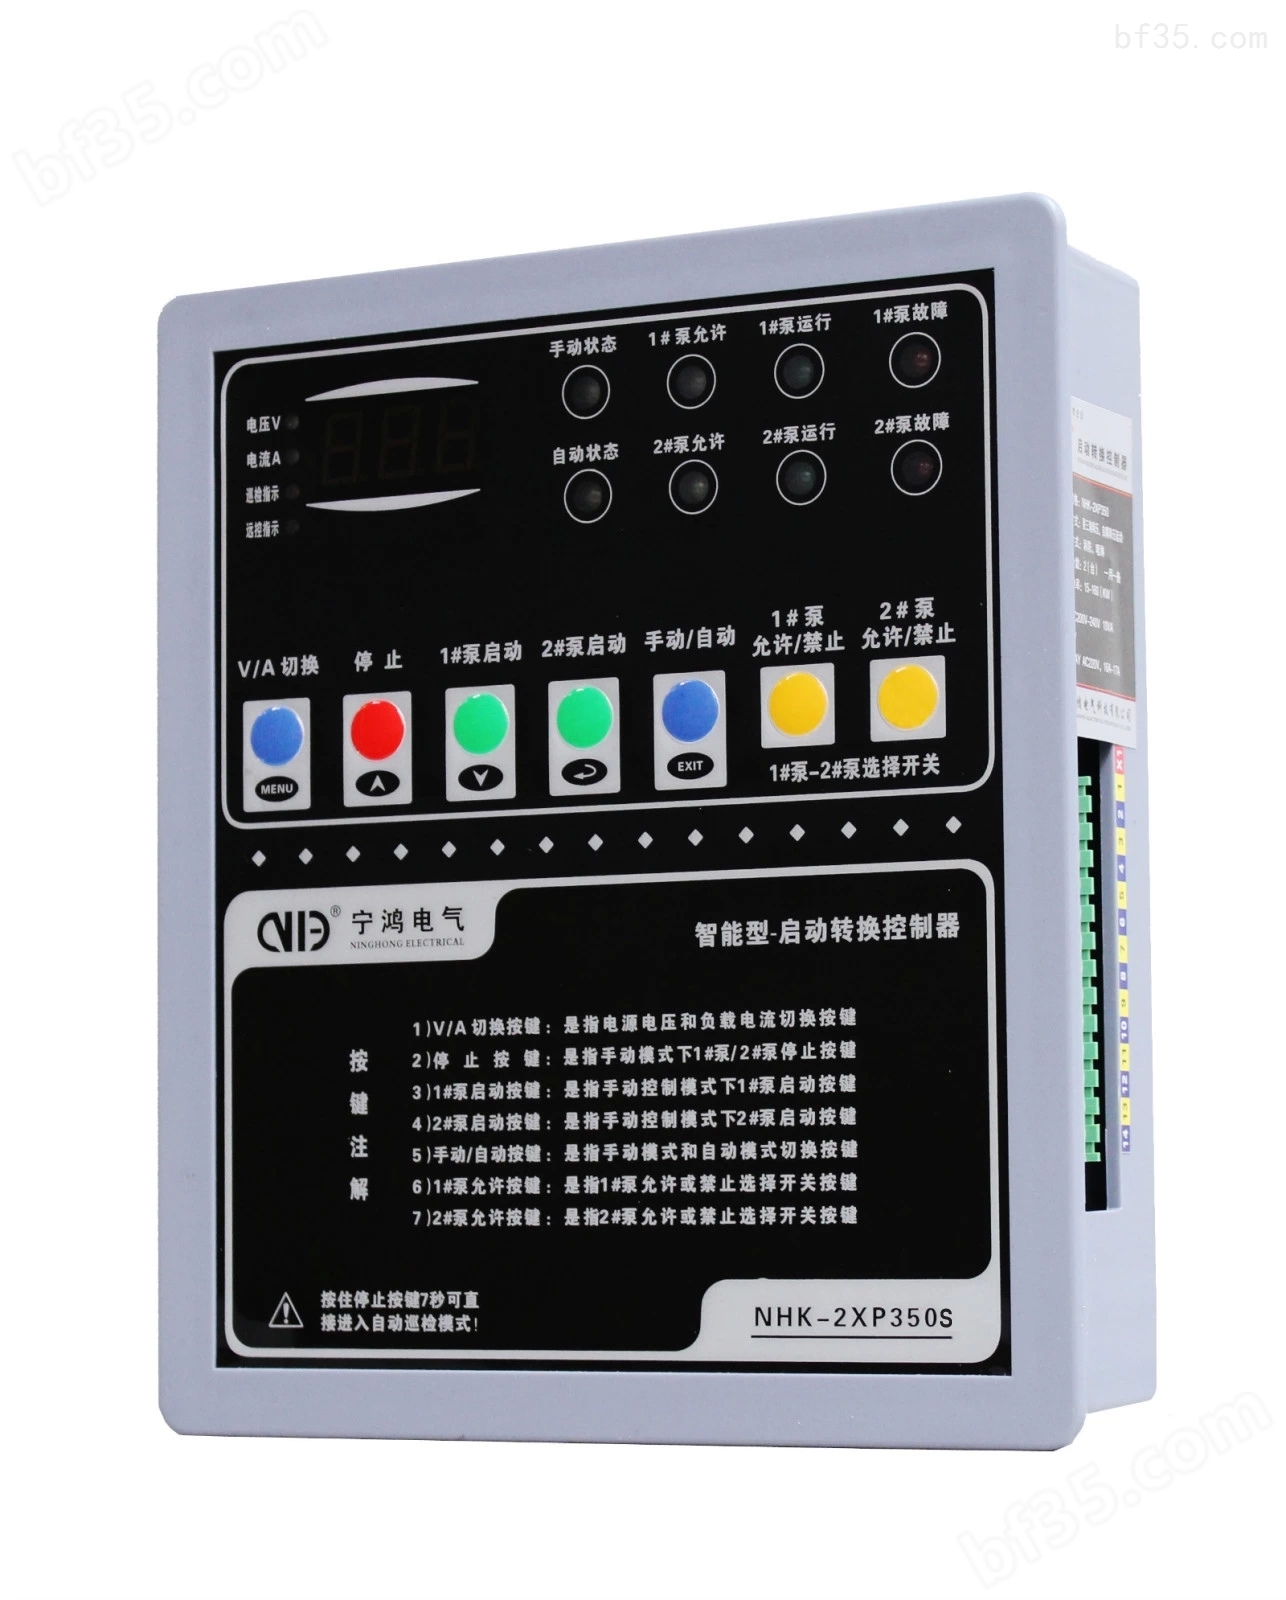 NHK-2XP350S智能语音水泵控制器 降压启动